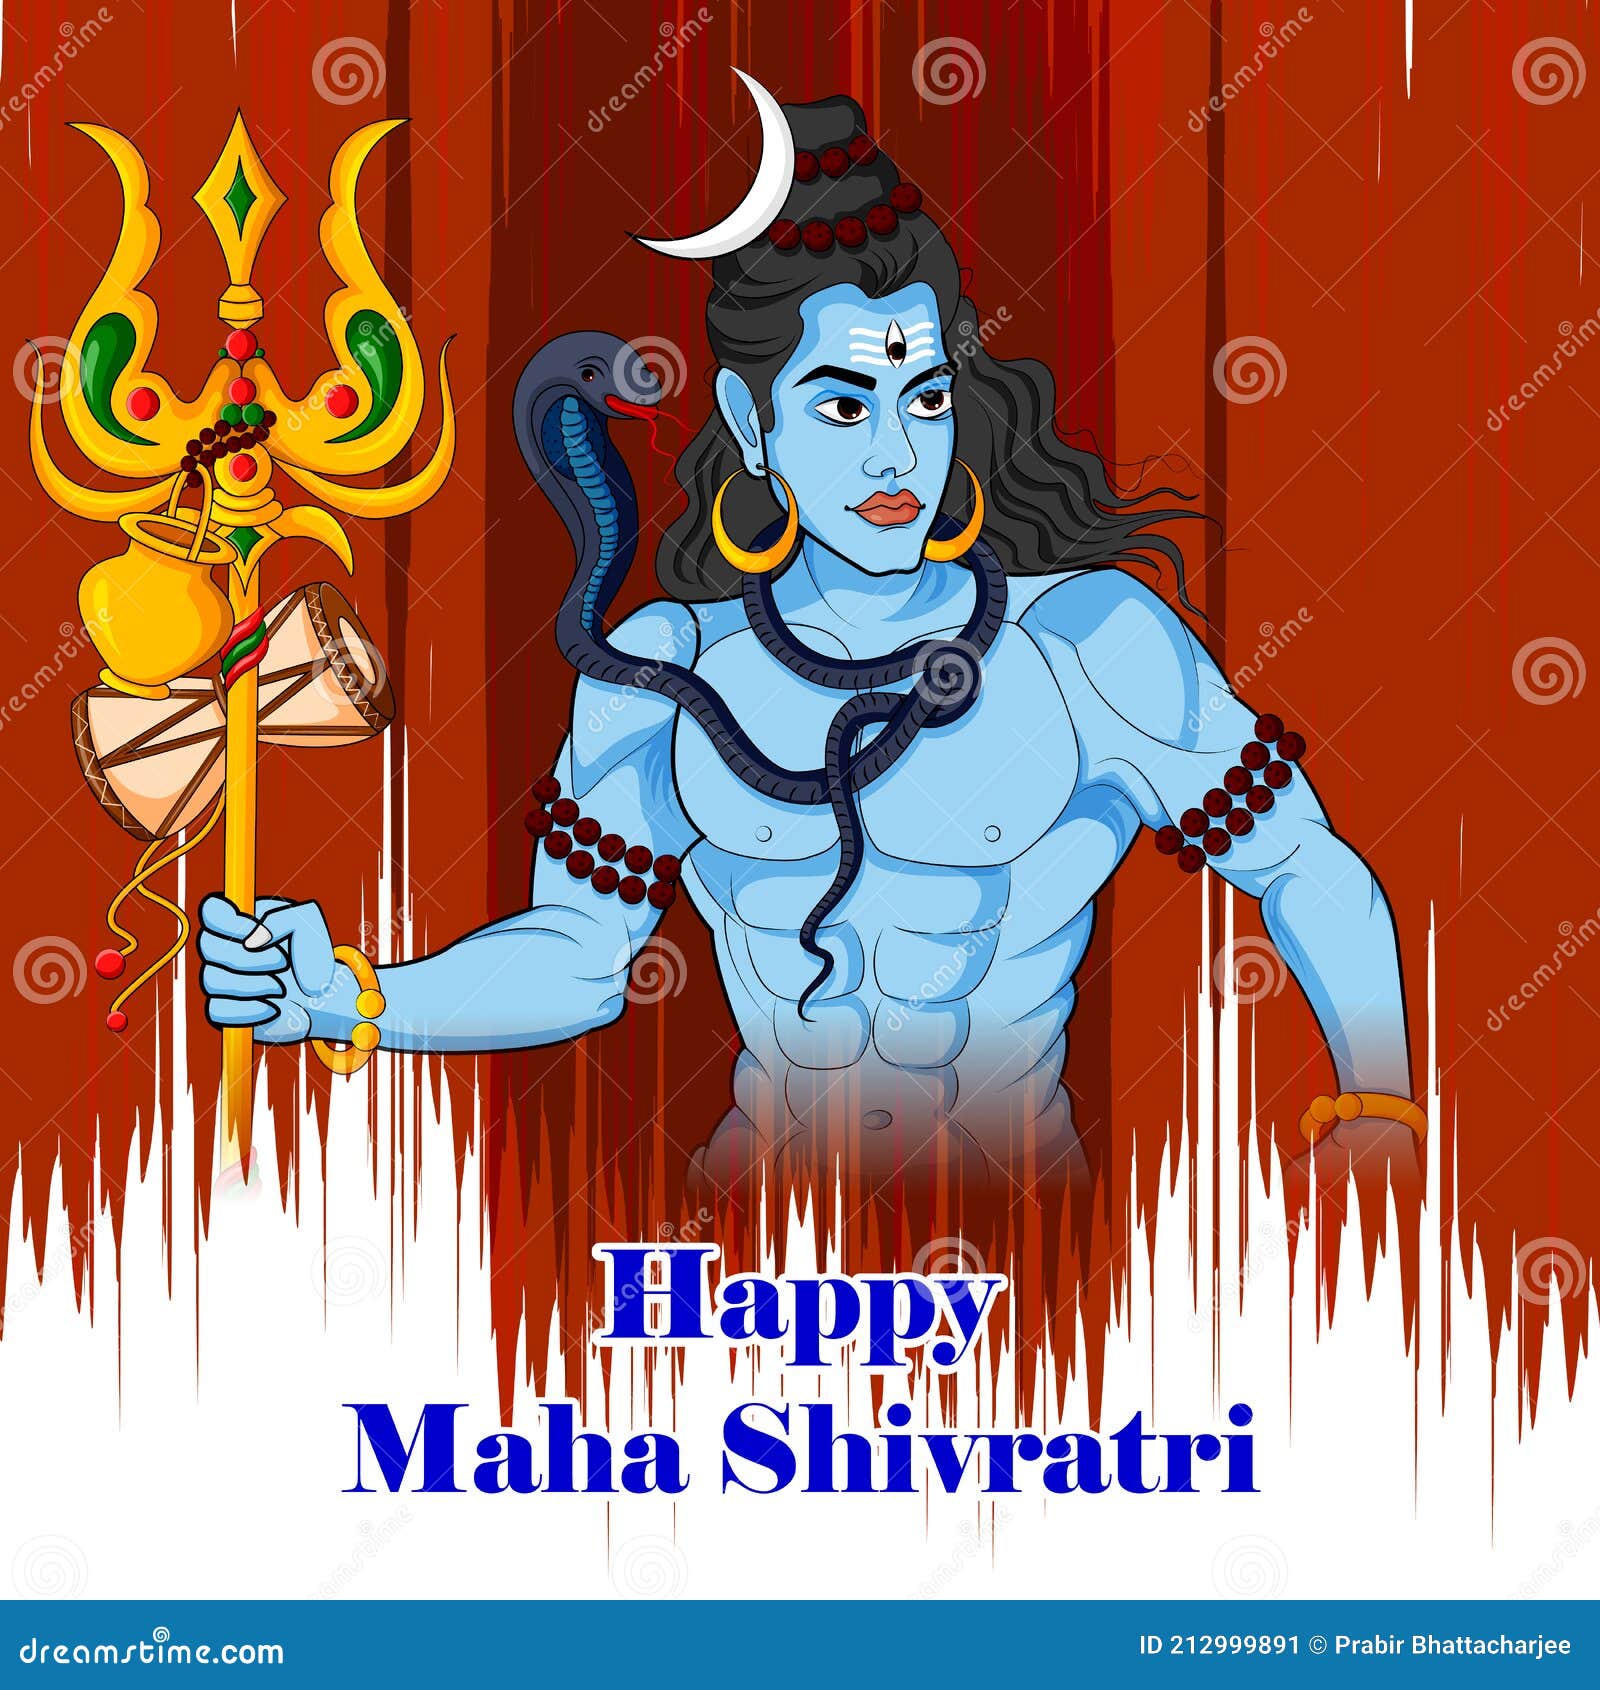 Lord Shiva on Maha Shivratri Religious Festival of India Stock Vector ...